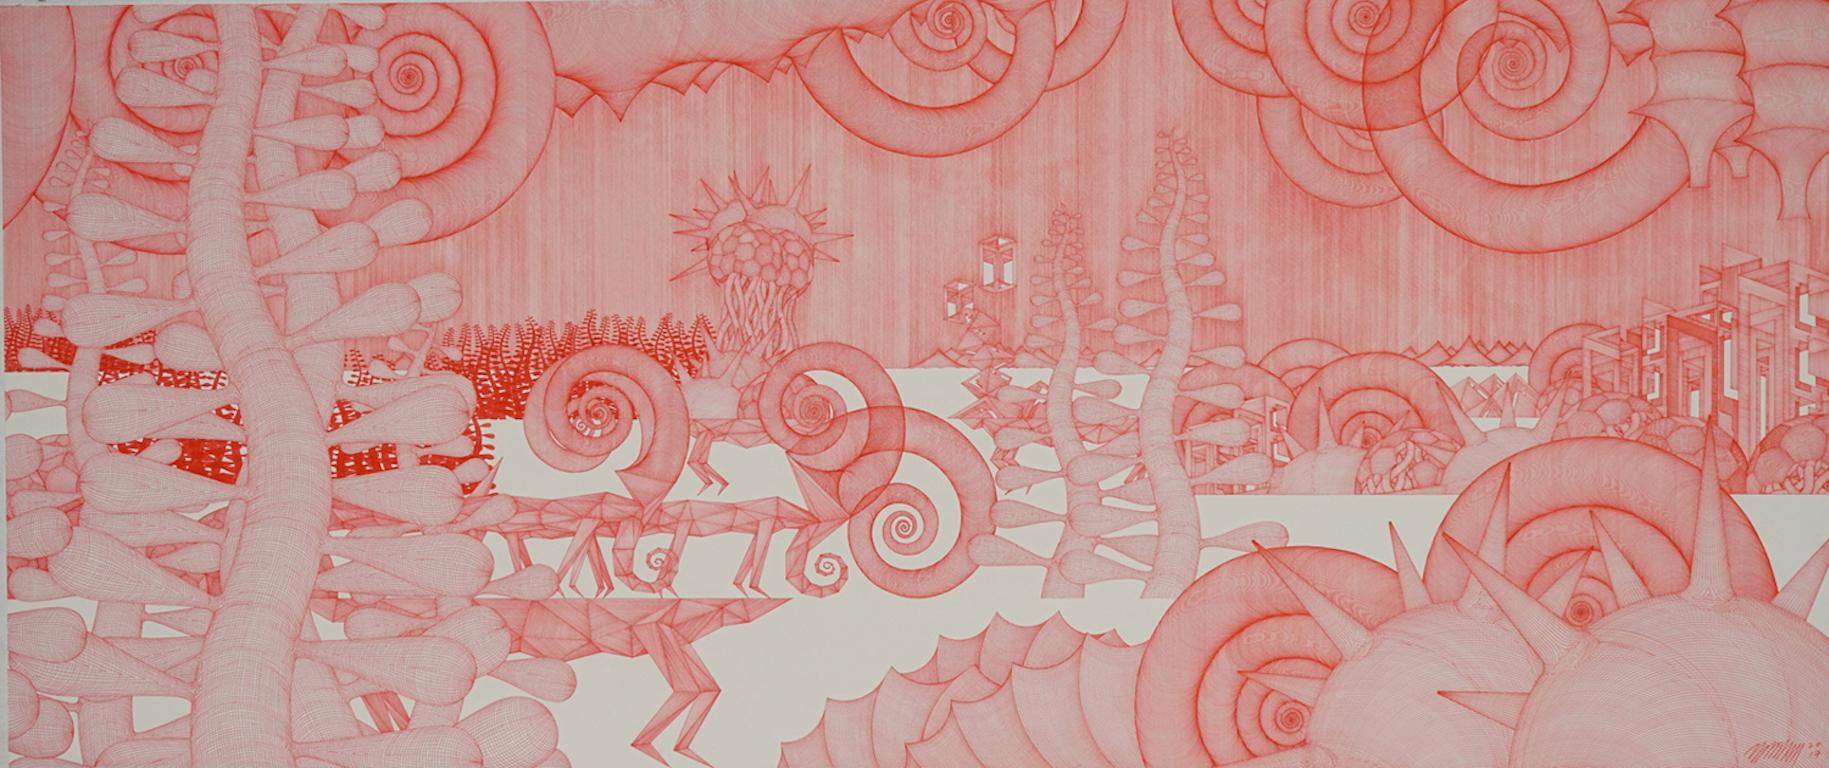 Journey #27 ( dessin au crayon rouge monochrome sur bois détaillé dansaekhwa orientale)